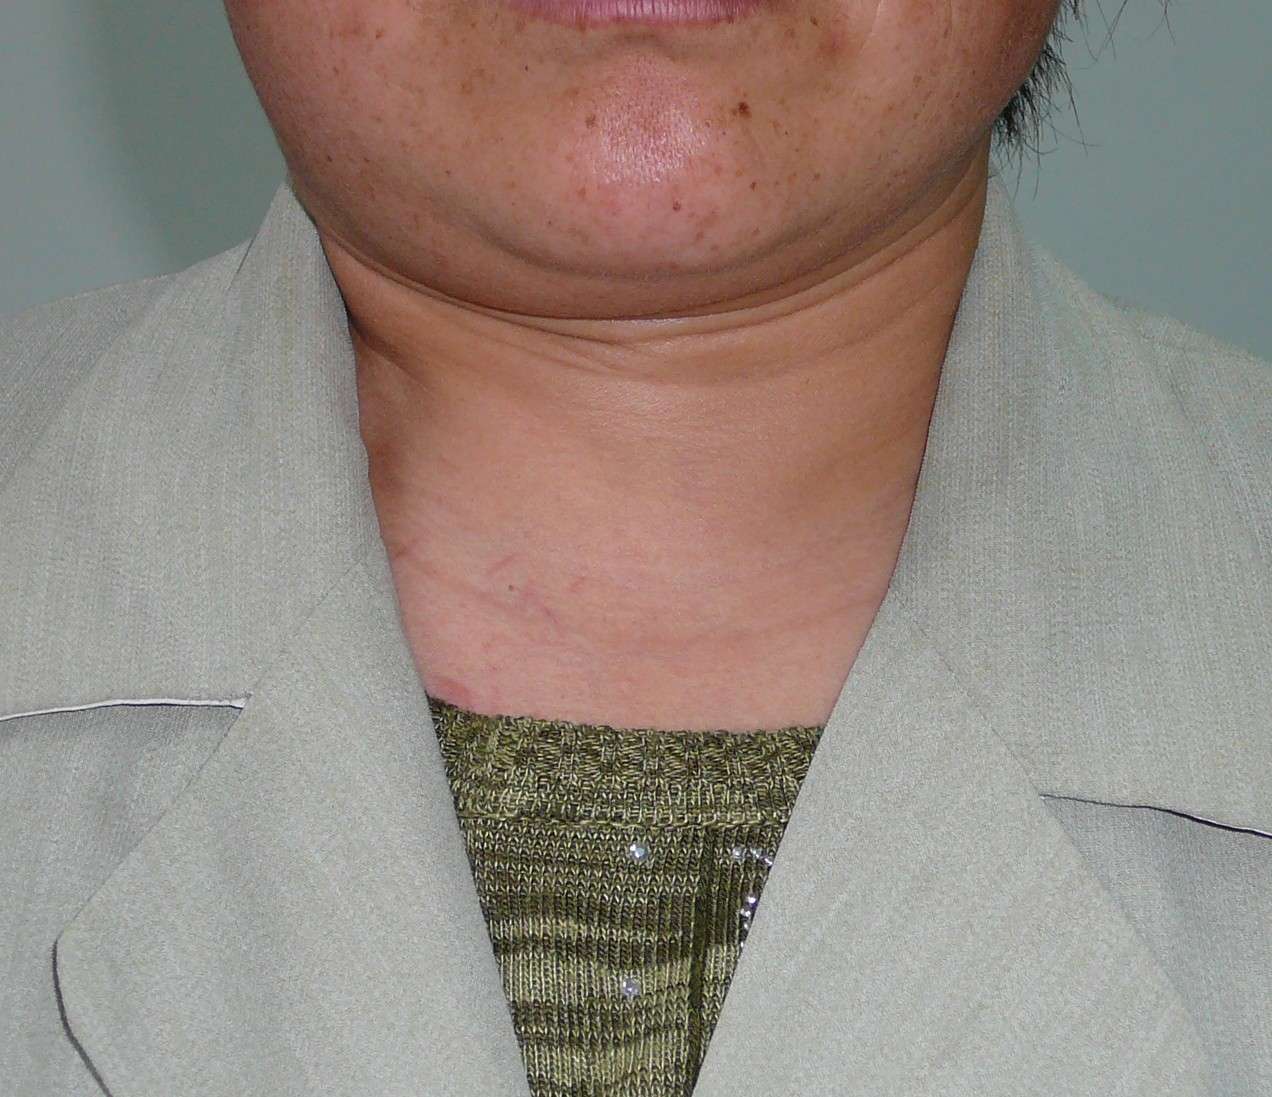 图3-58 颈深部及腋窝淋巴结模式图-基础医学-医学